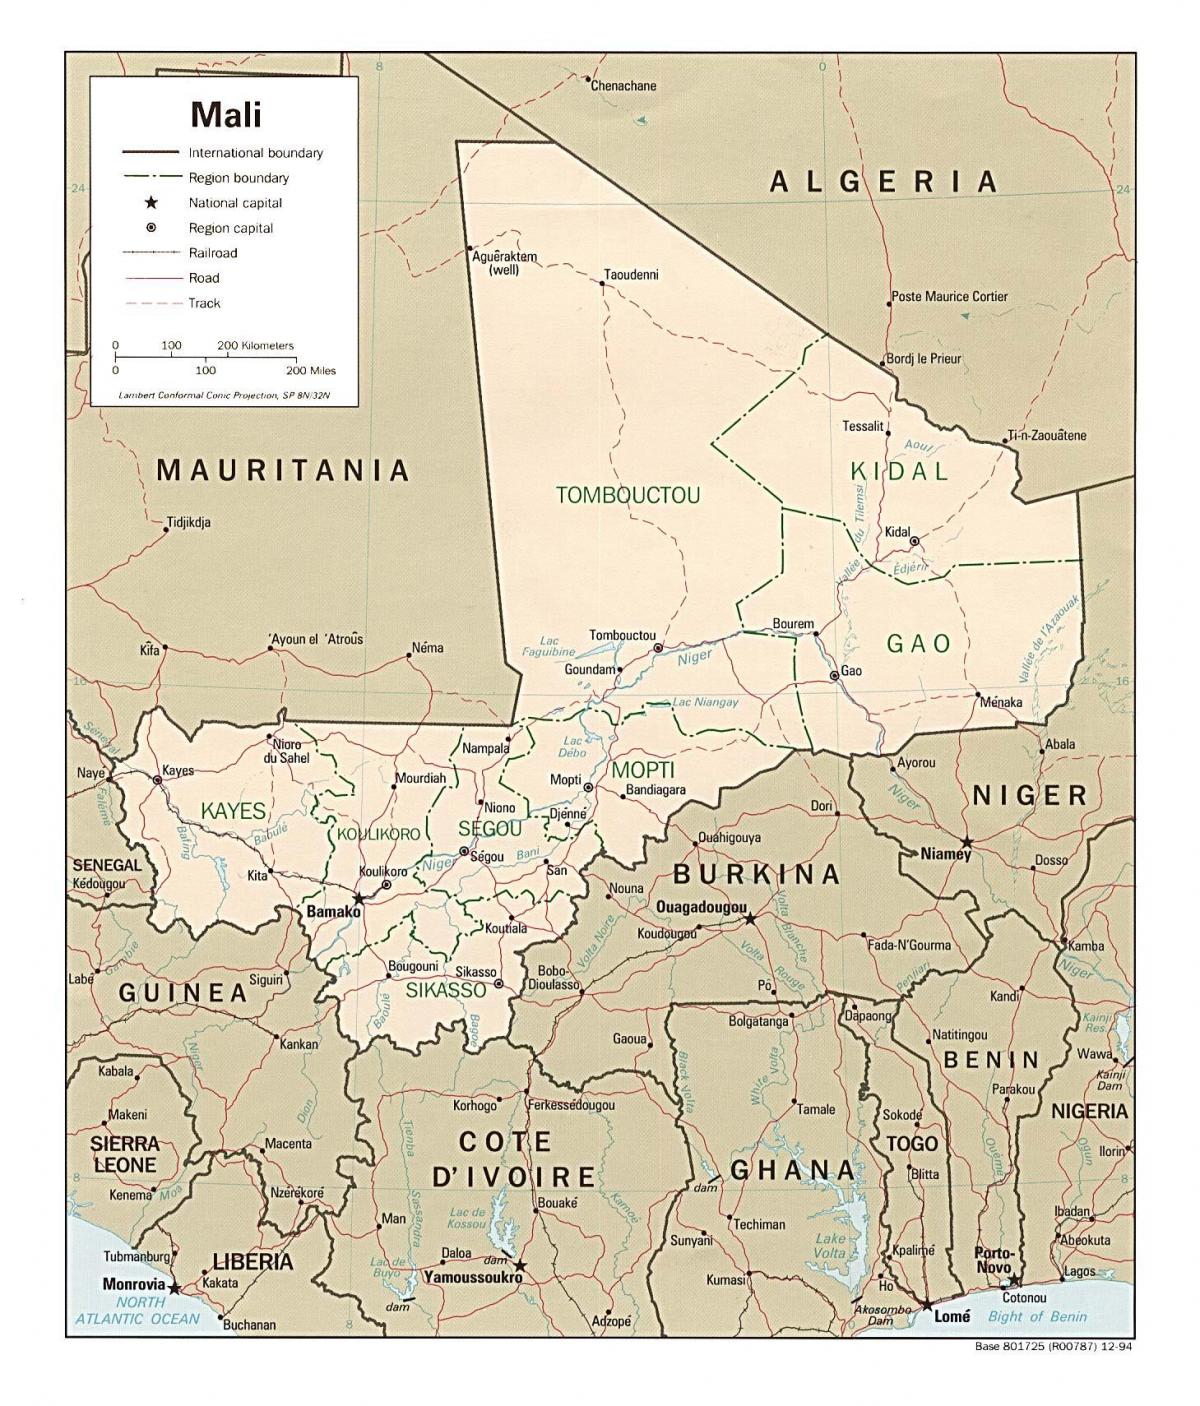 Kort af Mali landi